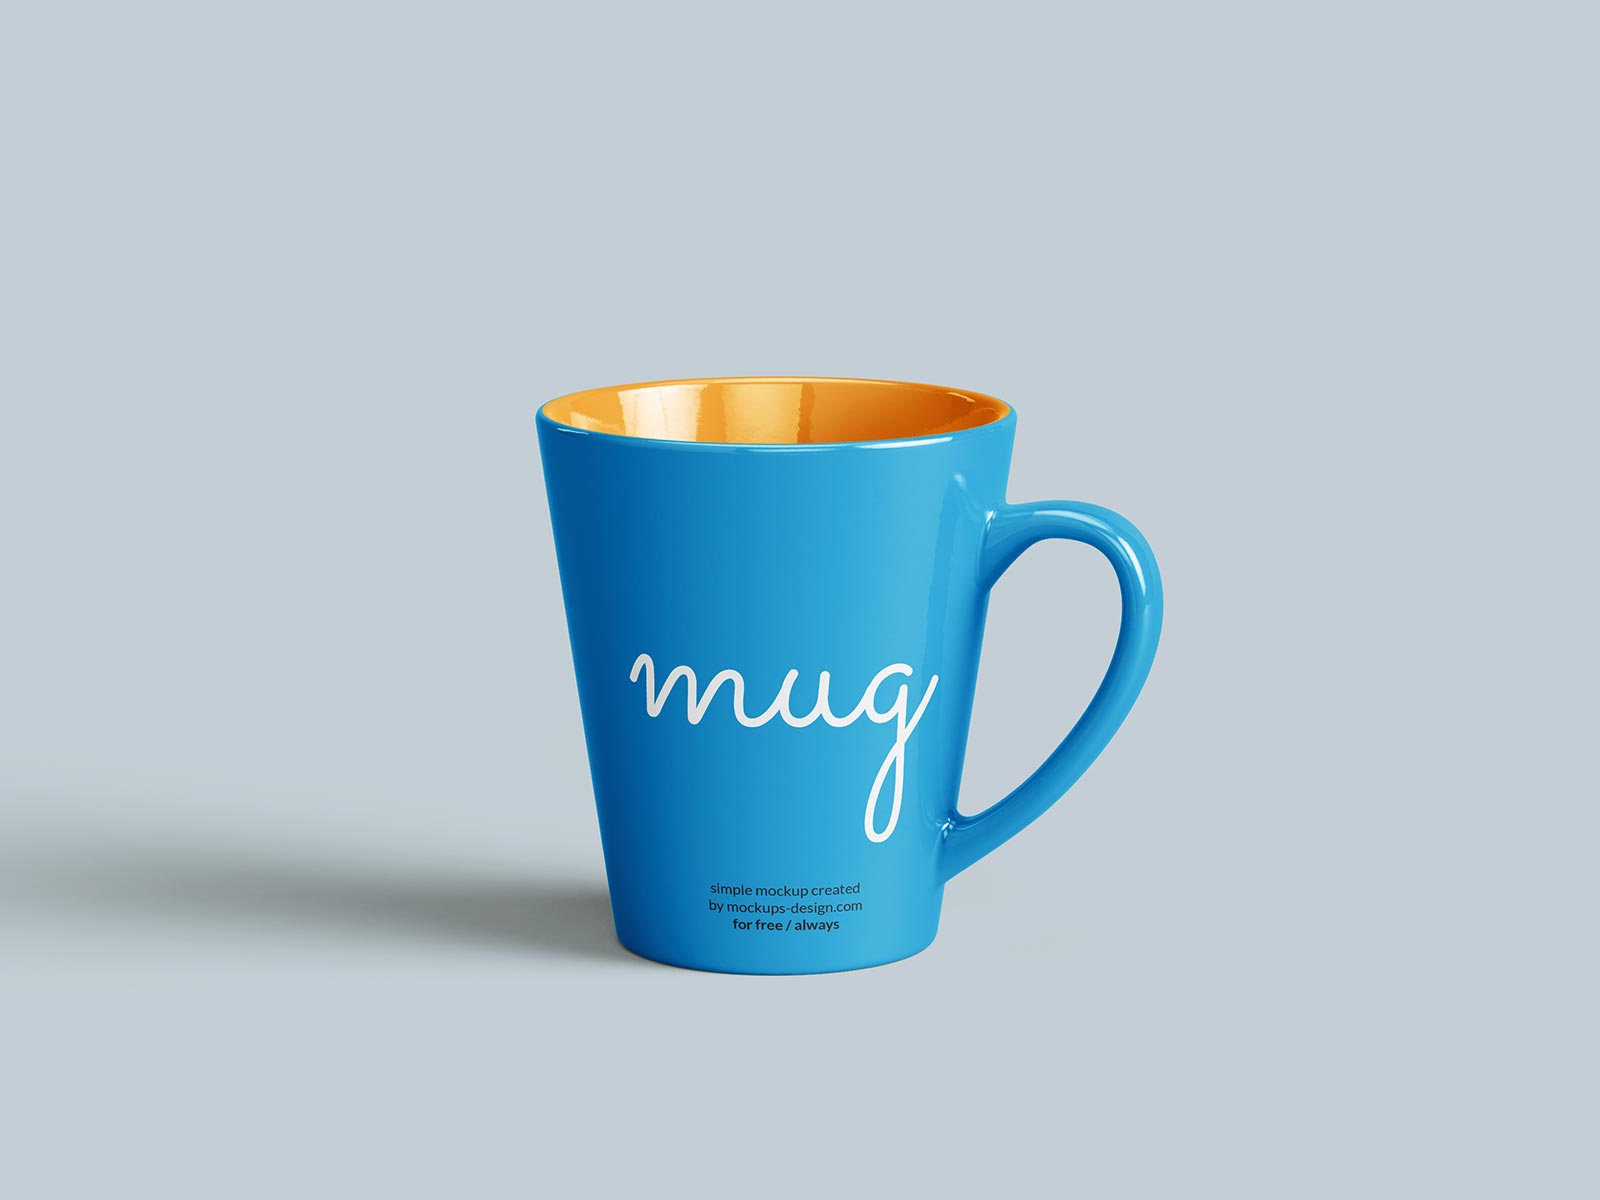 Free Tall Mug Mockup premium quality